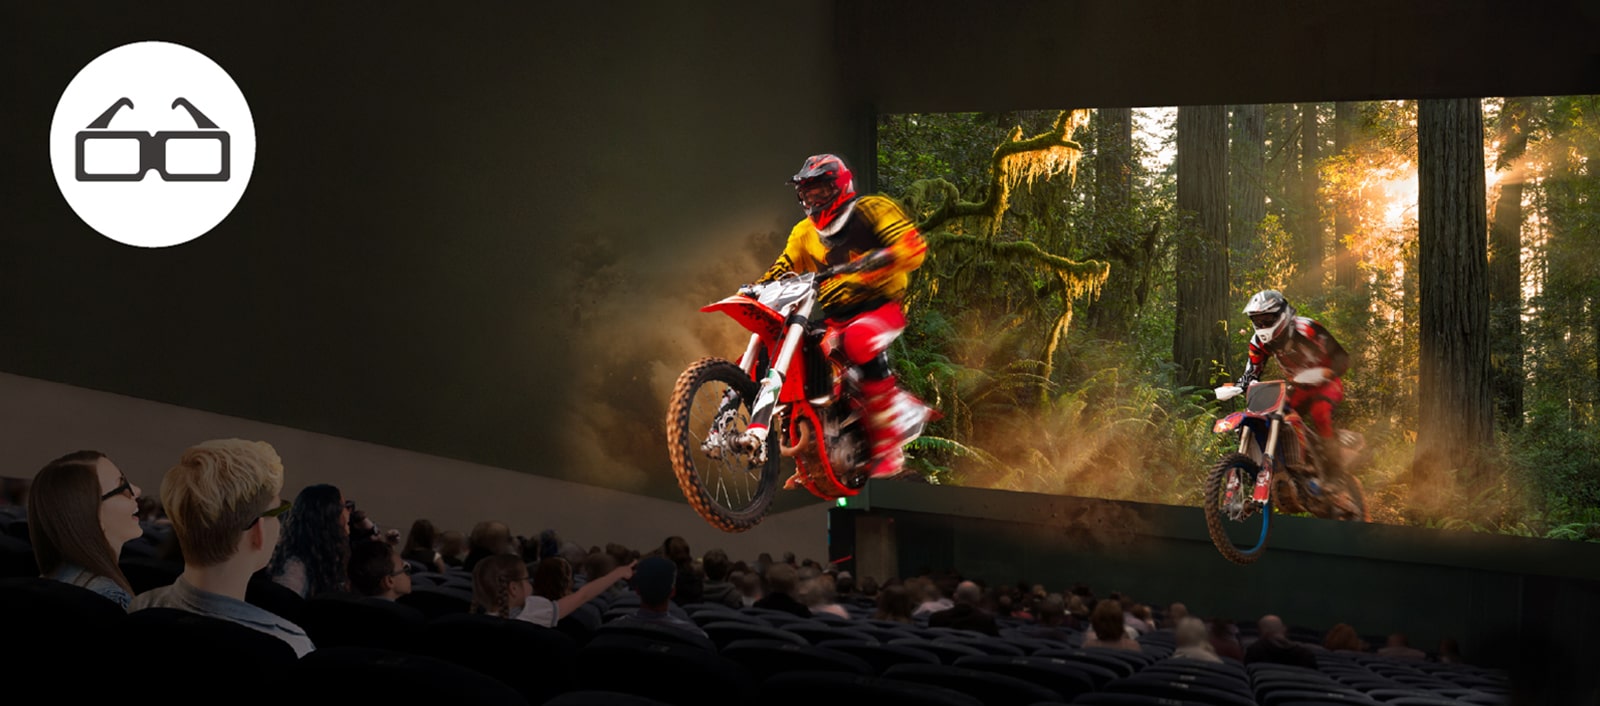 Trong rạp chiếu phim, mọi người đang xem phim đeo kính 3D và sự sống động của màn hình 3D đang được truyền tải đến khán giả.